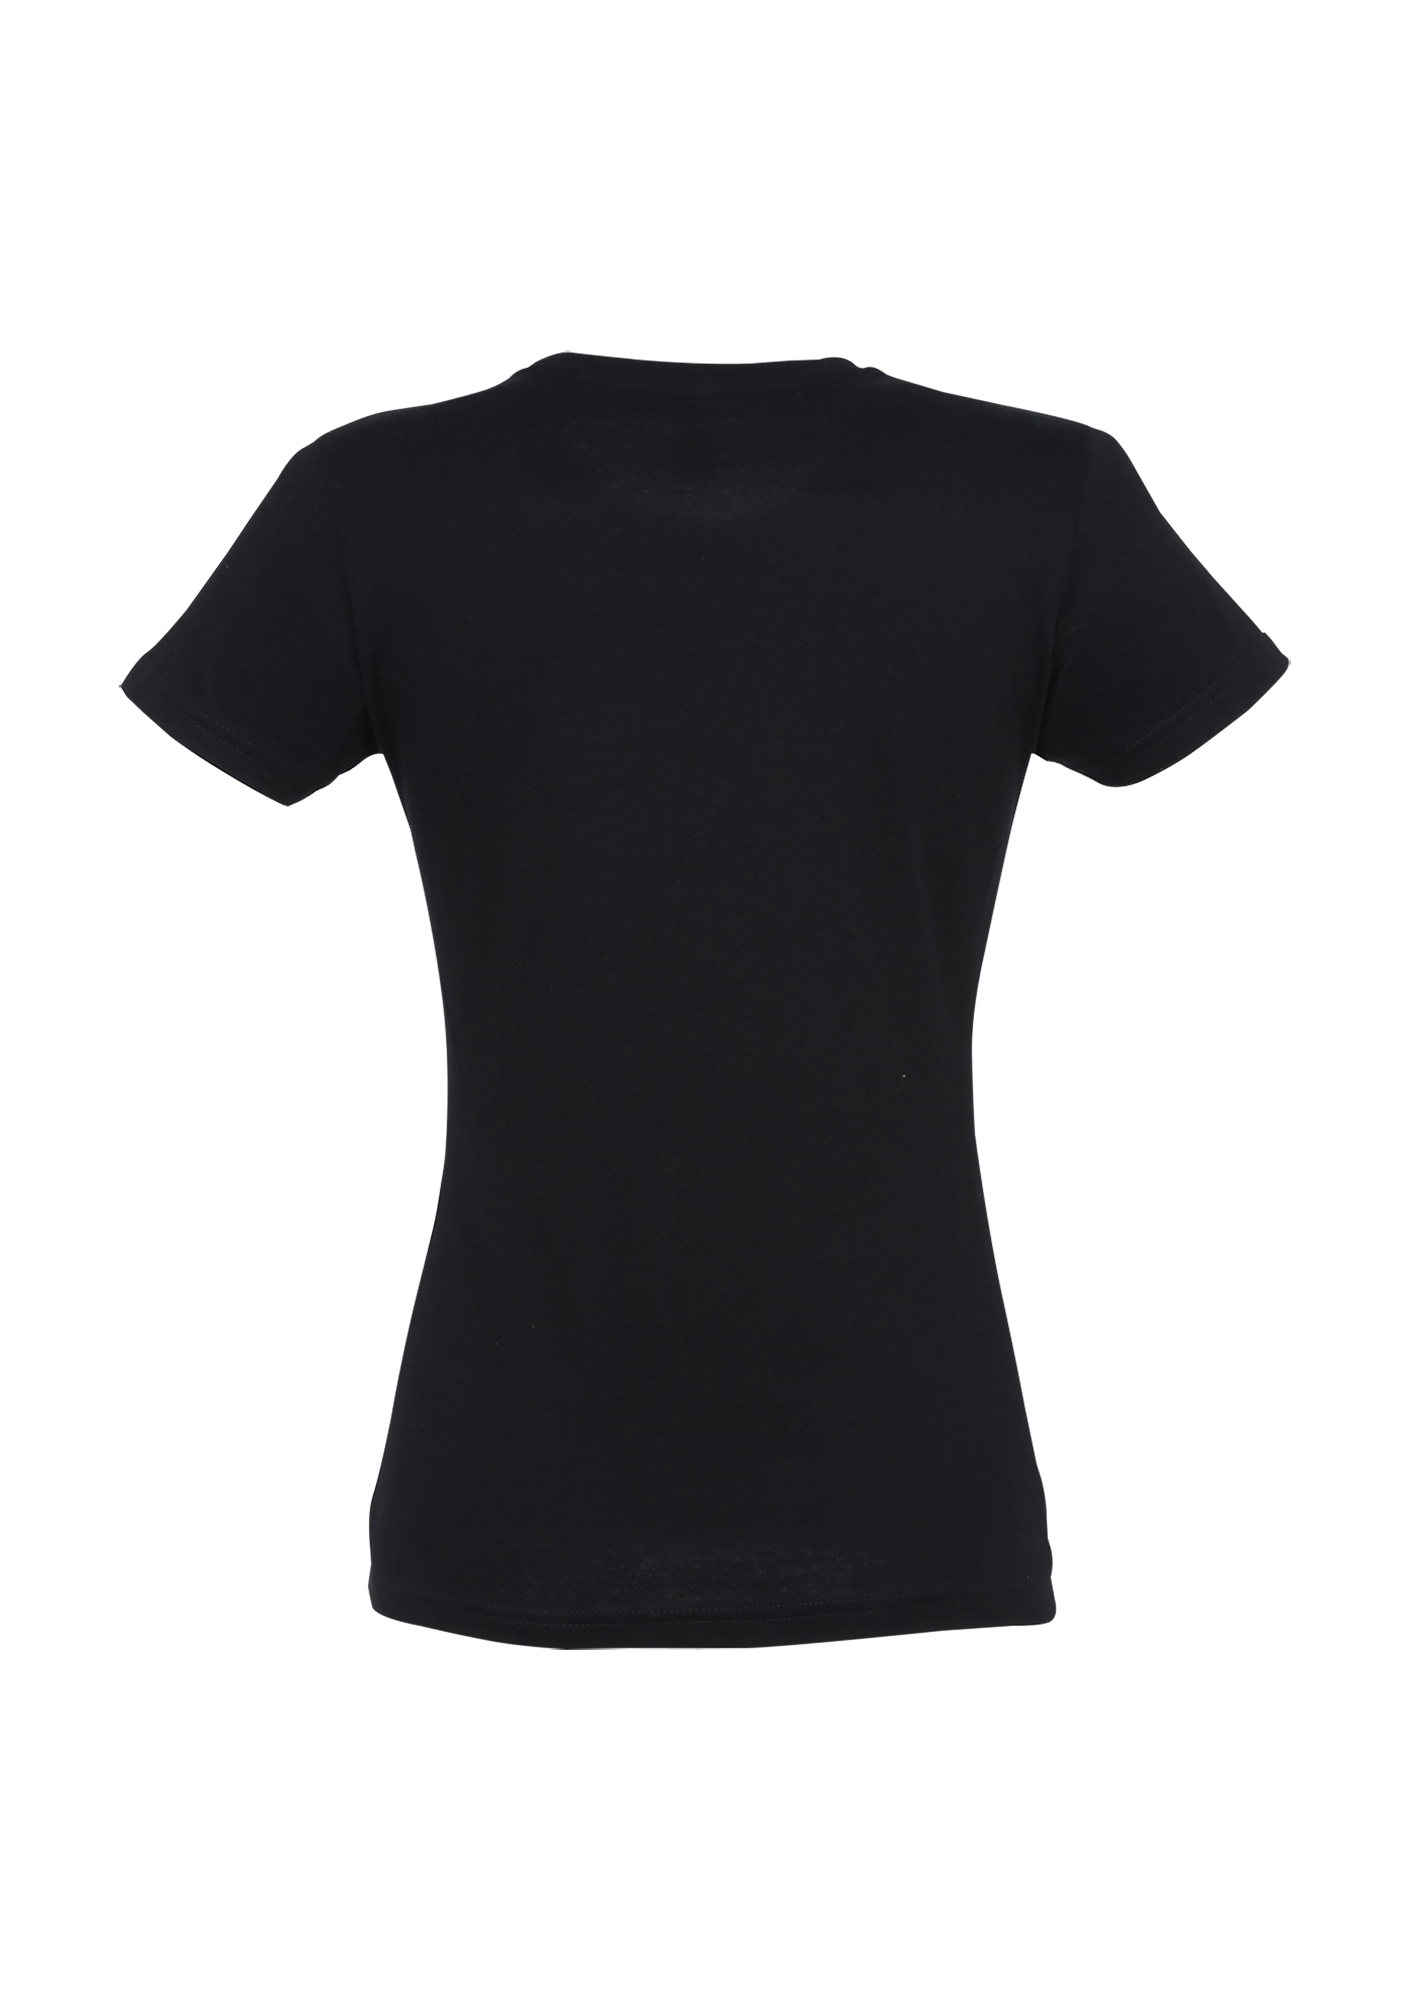 T-shirt Homme premium "100 et Or" Noir - pn11500309B